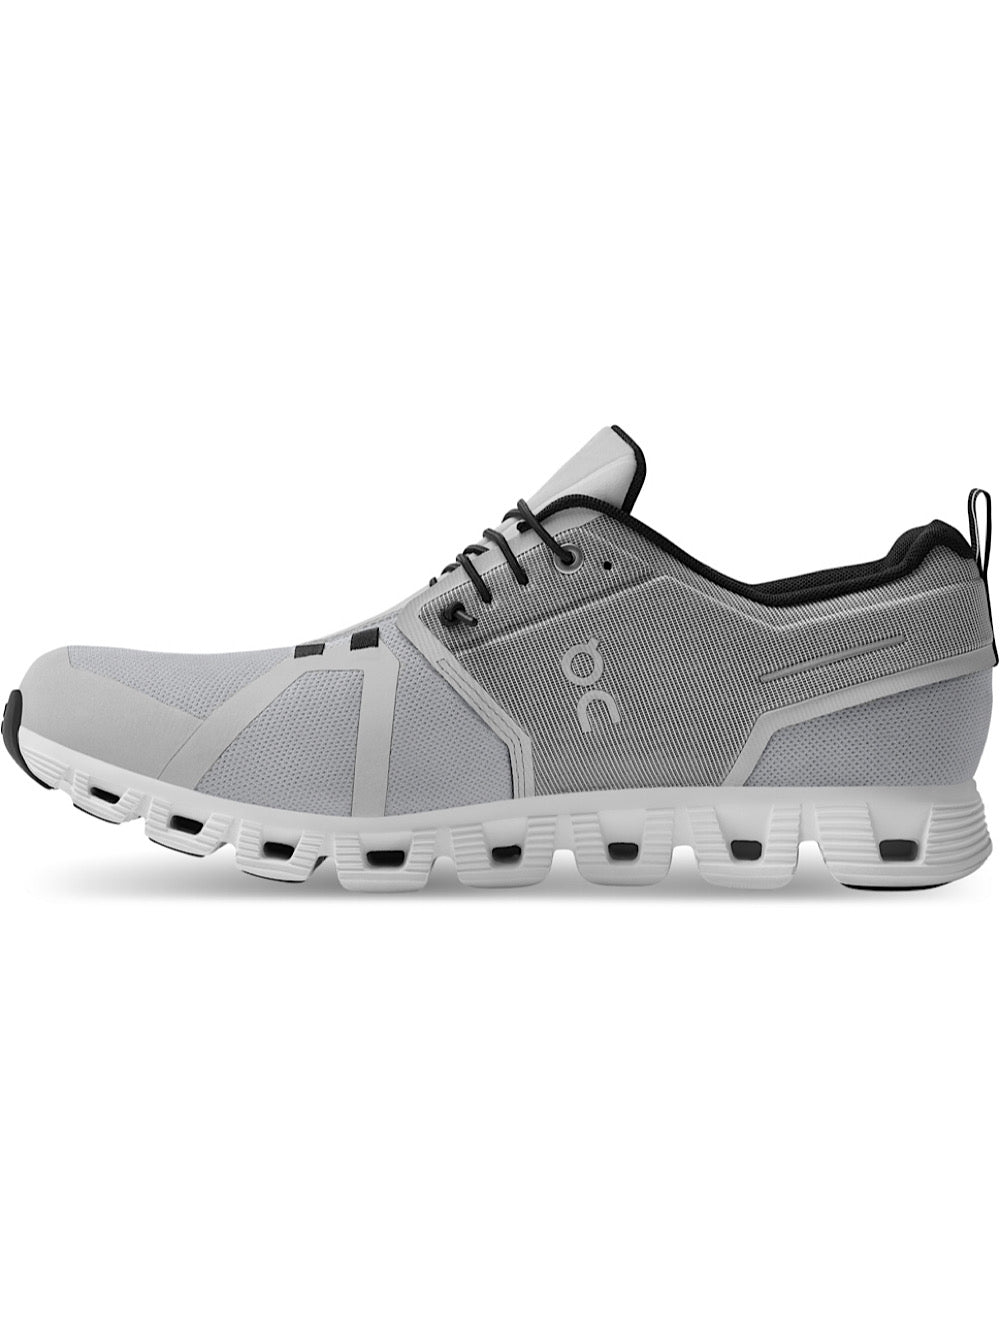 ON Sneakers Running mod. Cloud 5 Waterproof ghiaccio/bianco